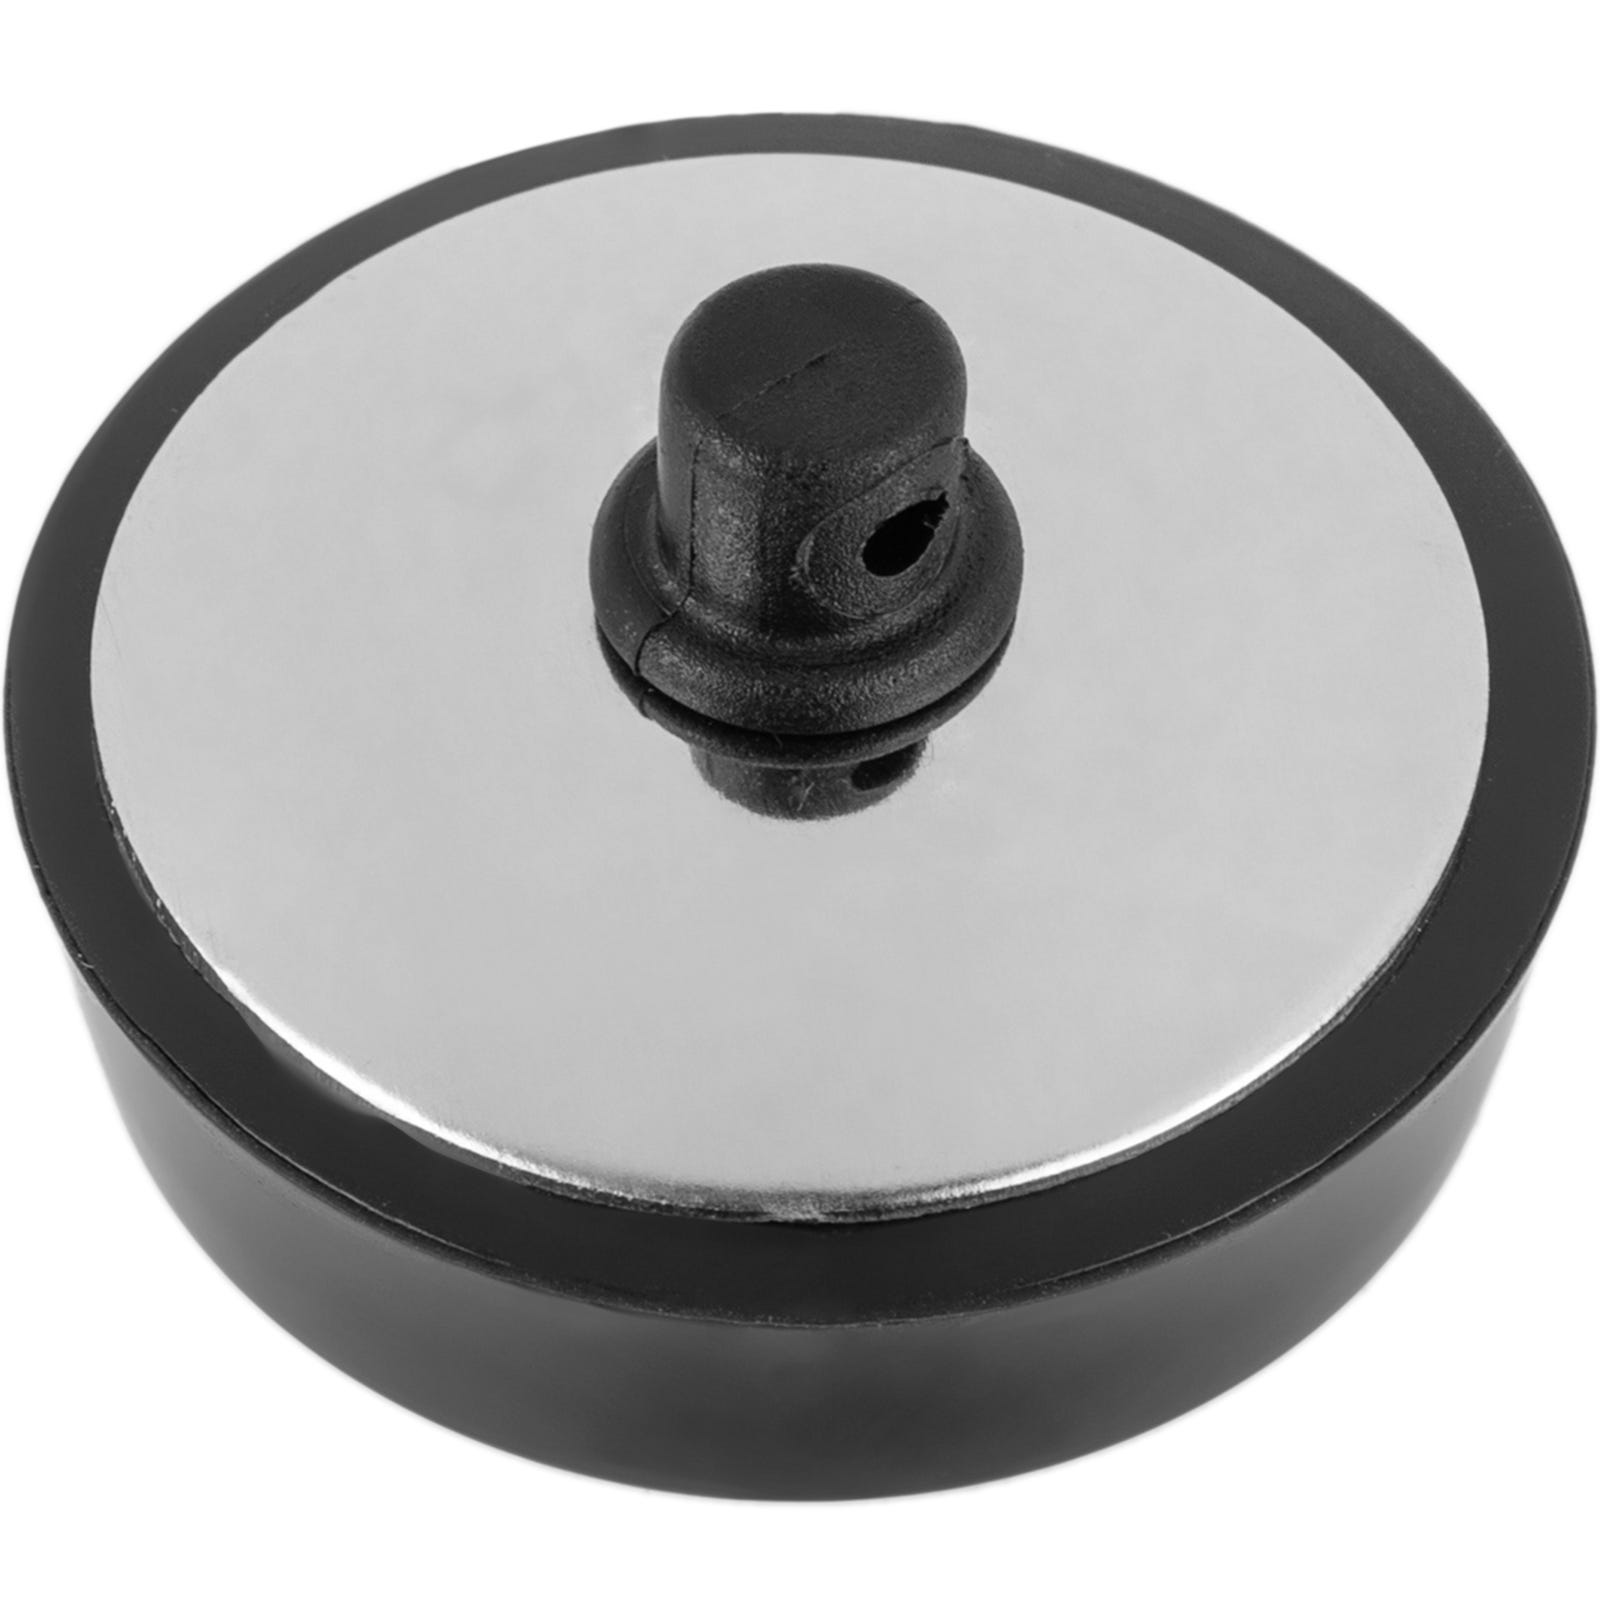 Tapón de goma para válvulas de cocina o lavabo de 50 mm